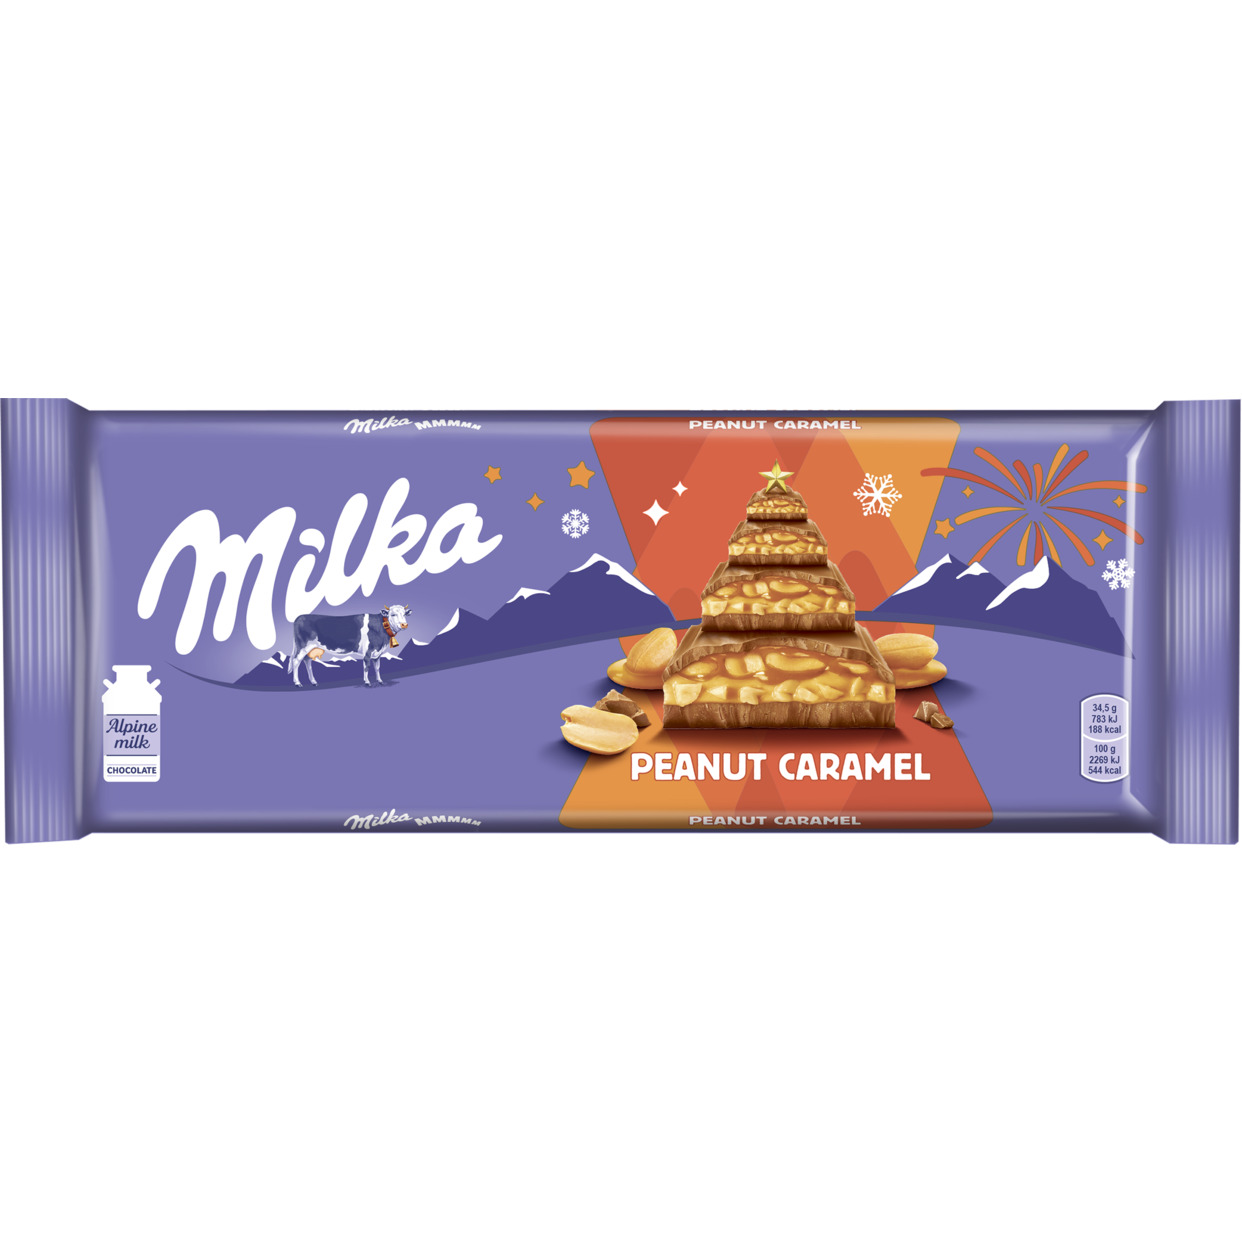 Шоколад «MILKA МММАХ» (МММАКС), молочный с карамельной начинкой и арахисом, 276 г по акции в Пятерочке